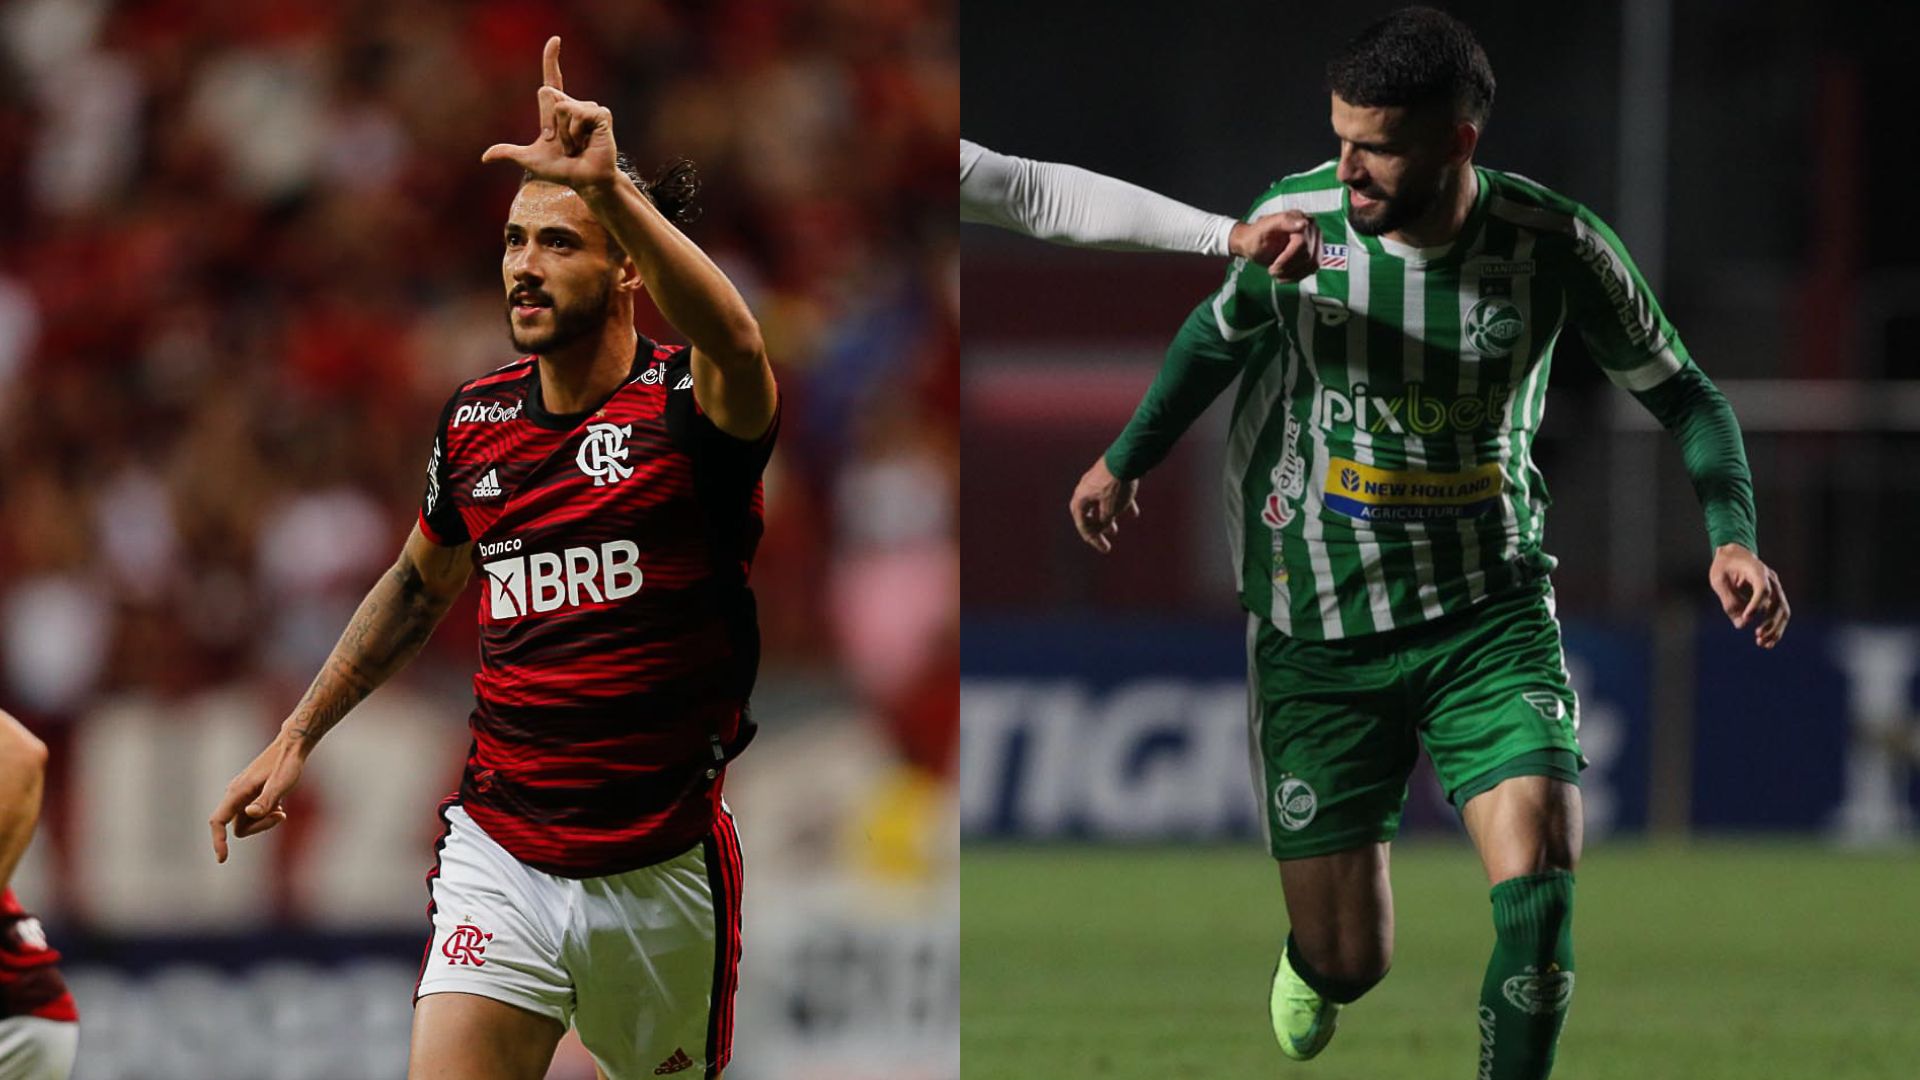 Tombense vs Criciúma: A Clash of Titans in Brazilian Football